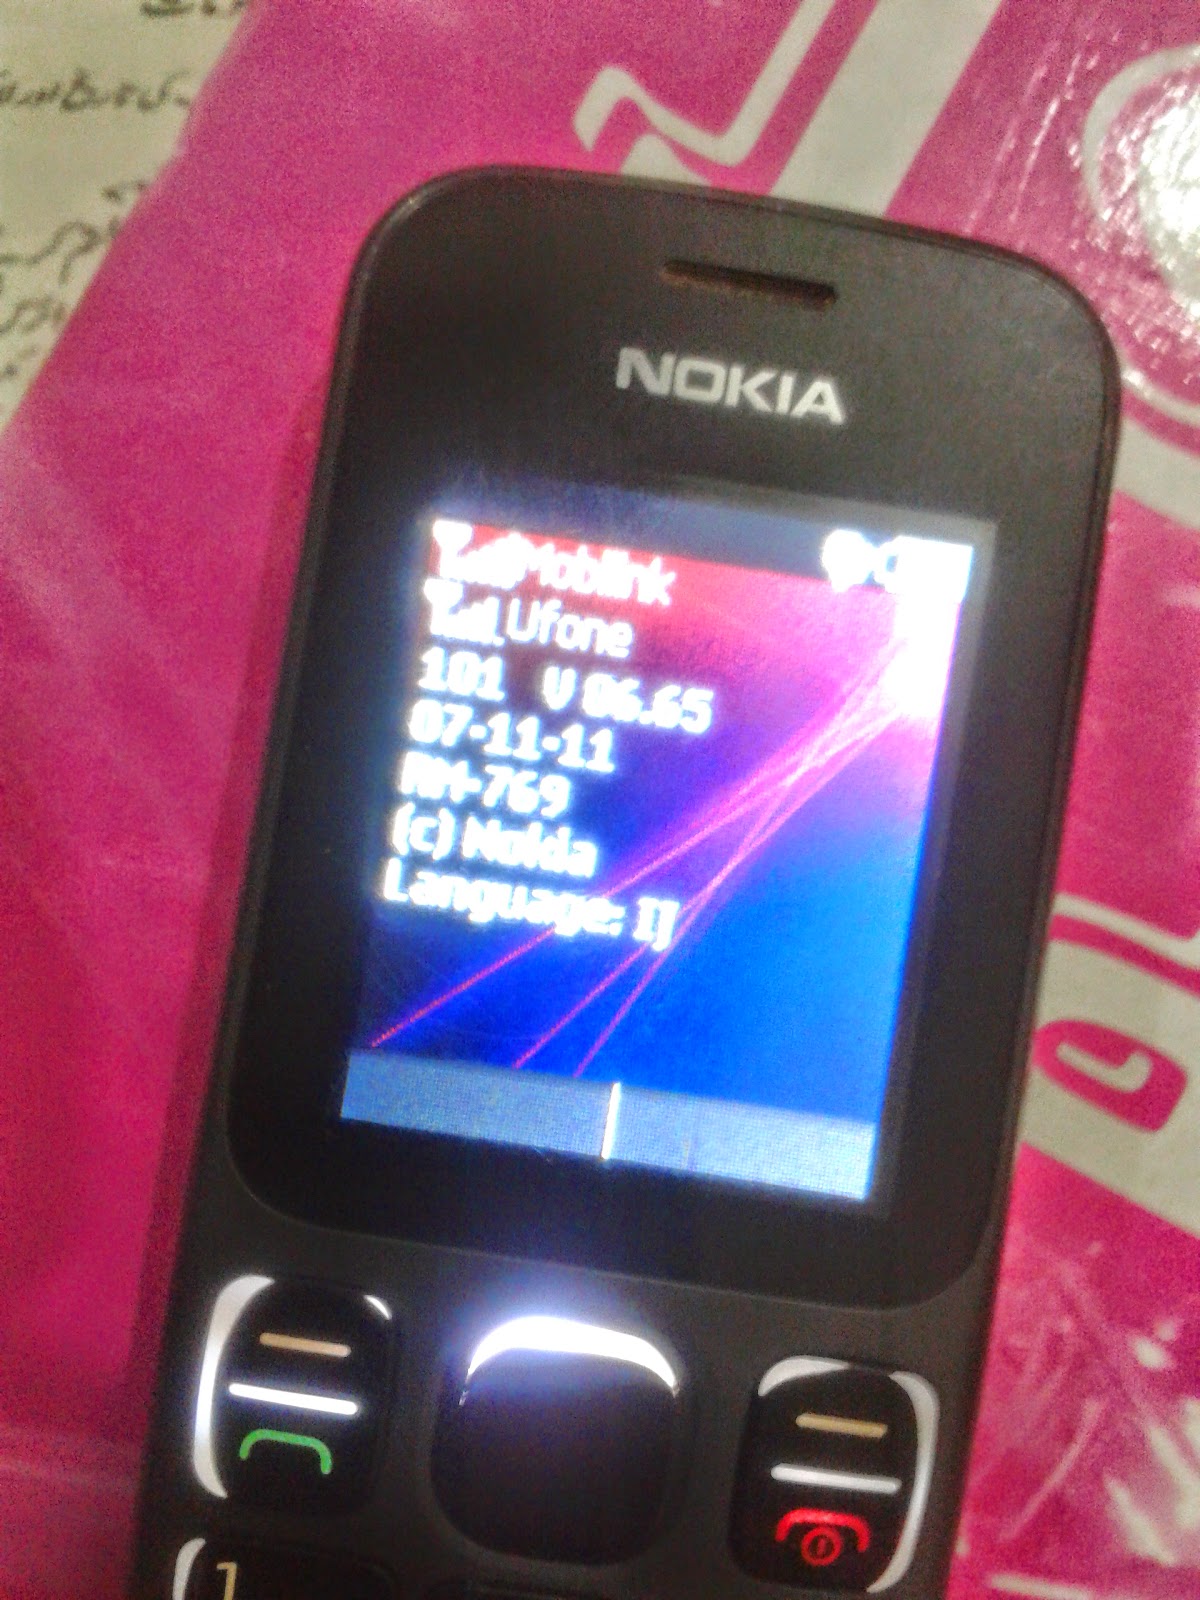 Best Nokia phones 12222